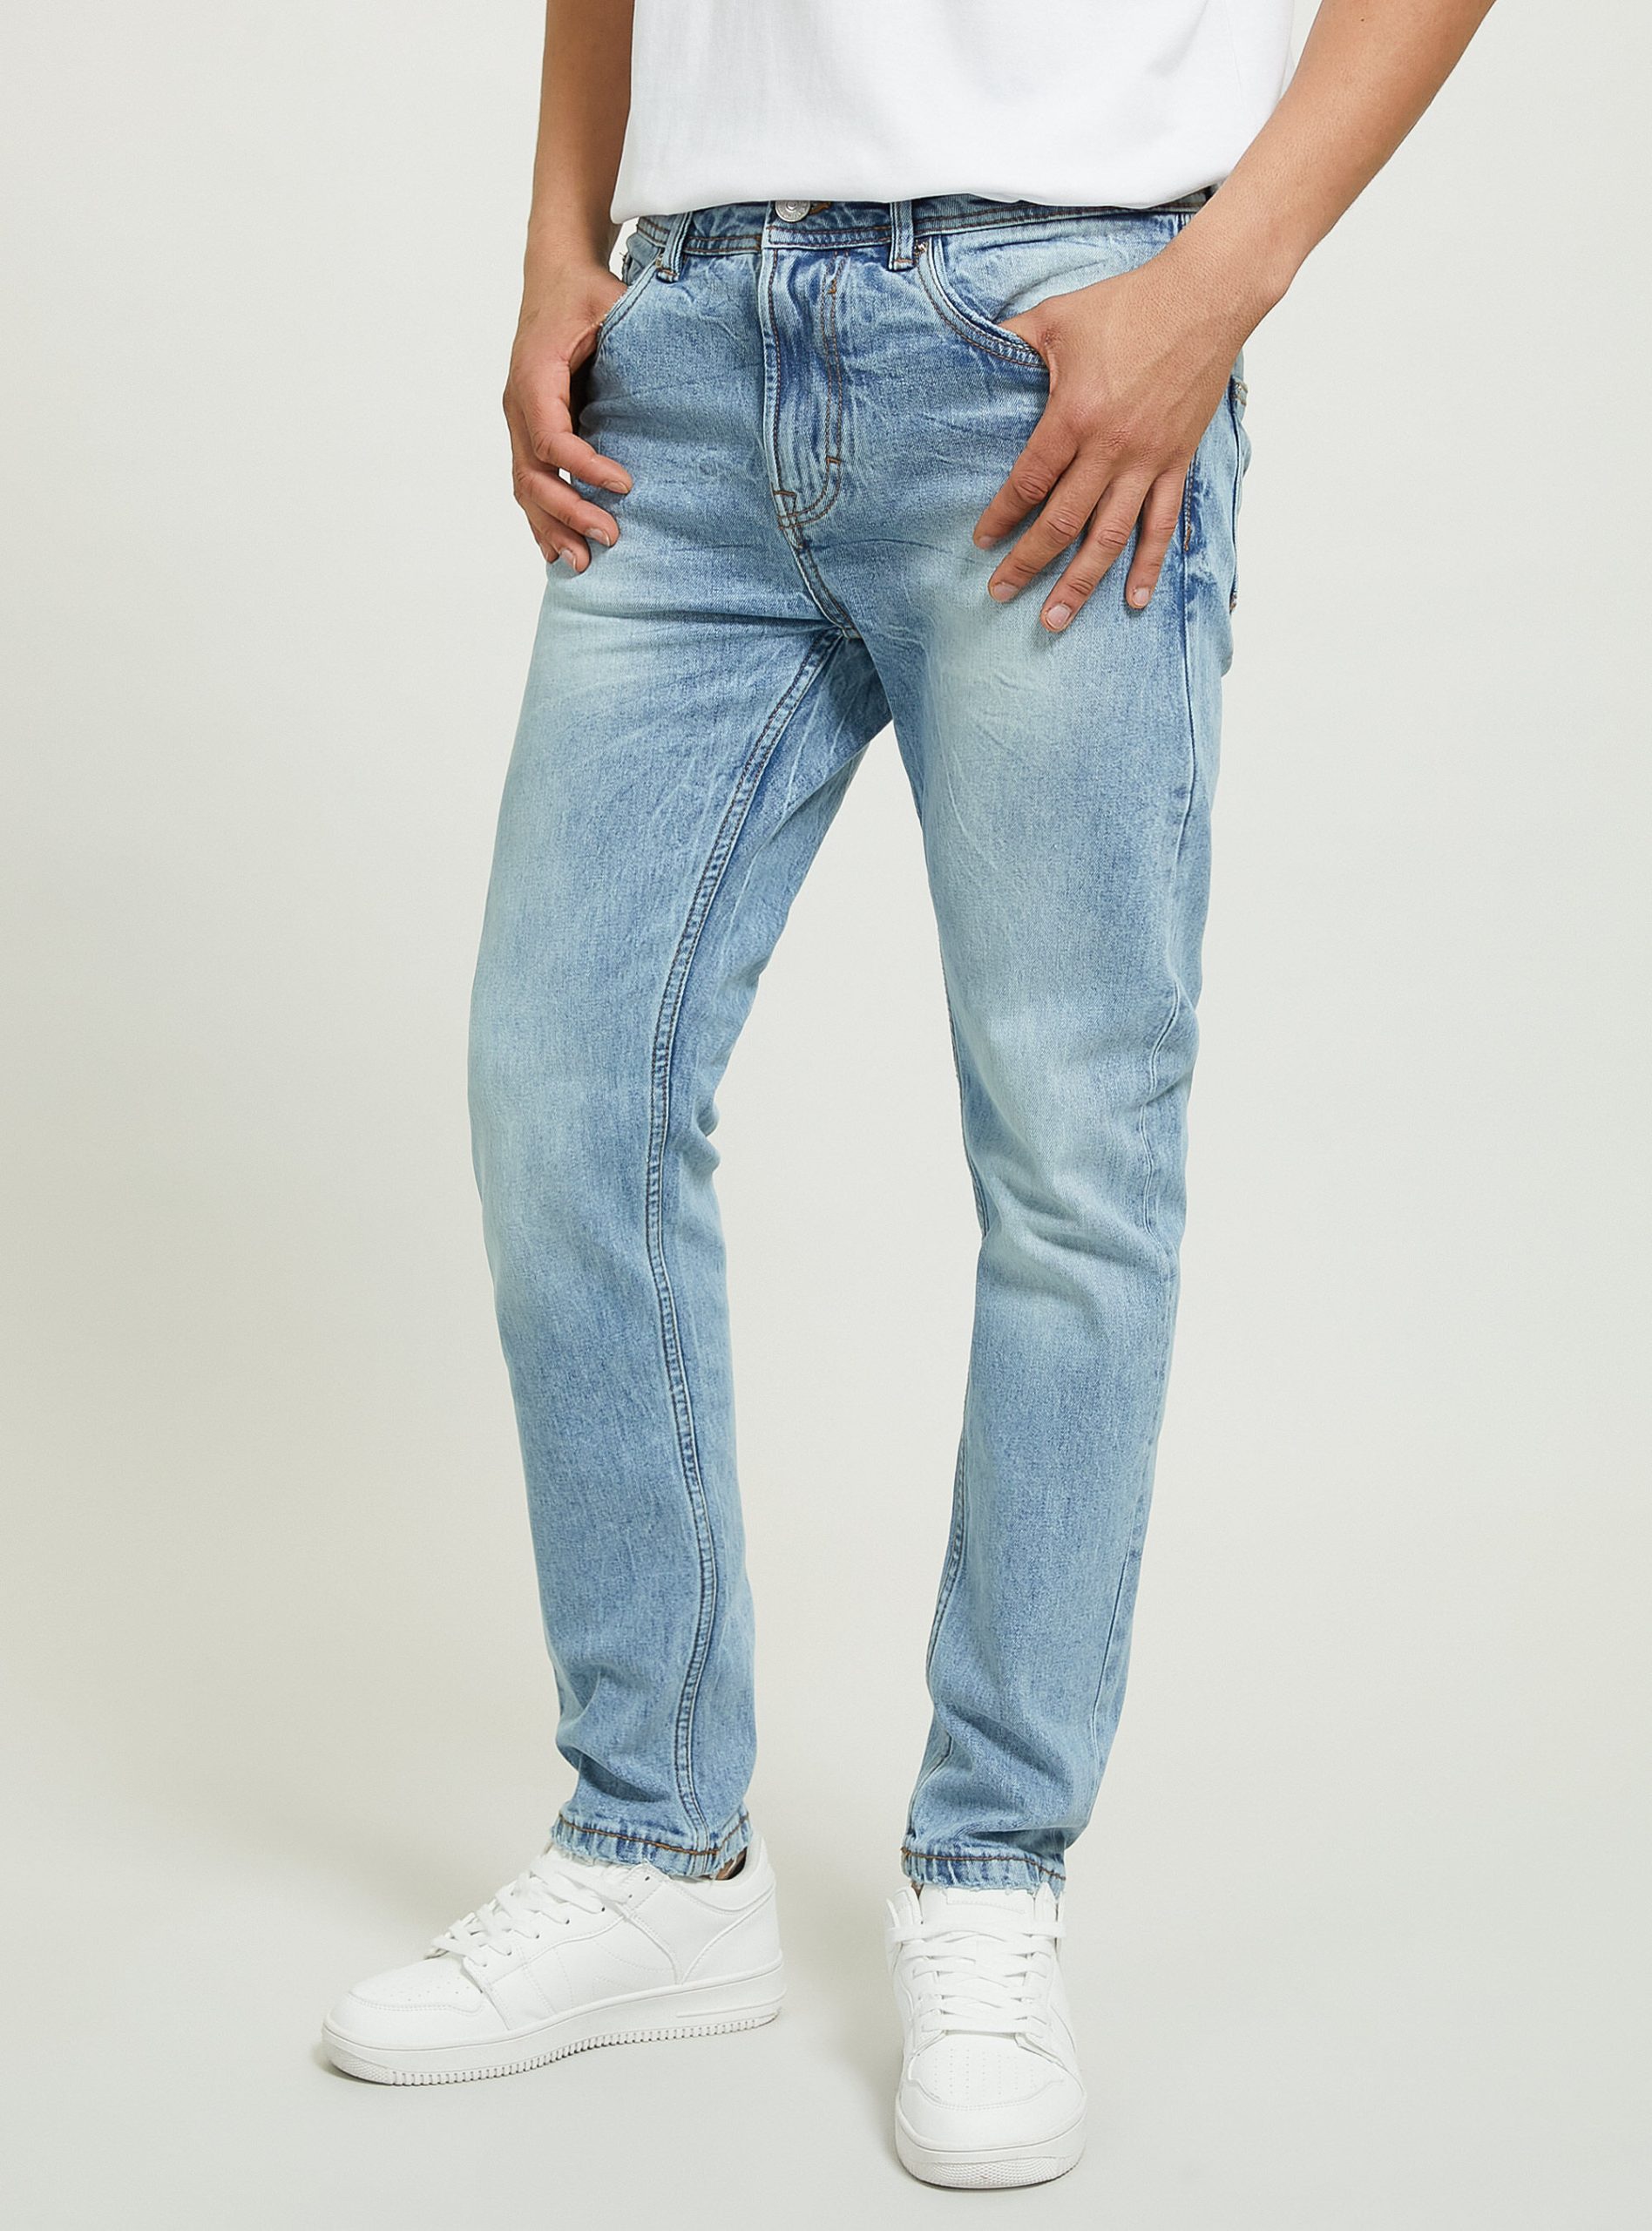 Alcott Männer Slim Fit Baumwolljeans Jeans D004 Medium Light Blue Sonderrabatt – 1